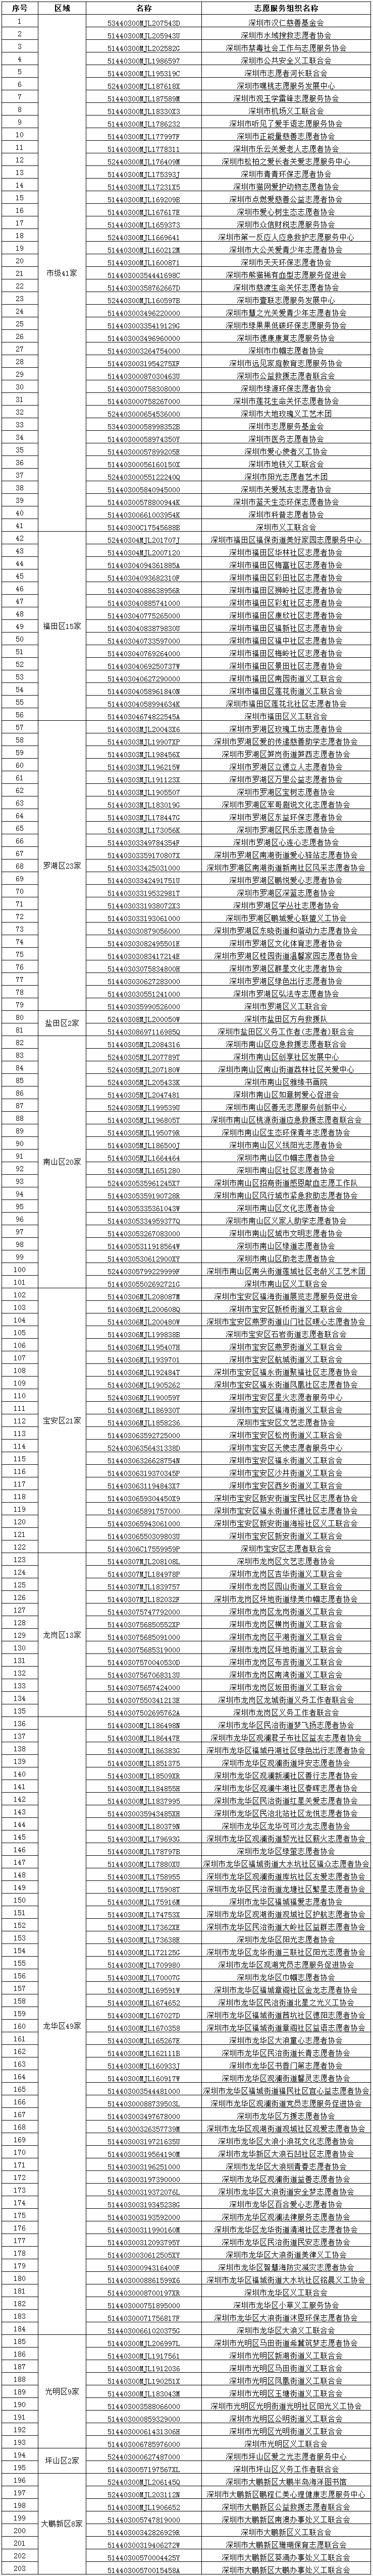 动态 | 深圳市民政局关于203家社会组织标识为志愿服务组织的公示